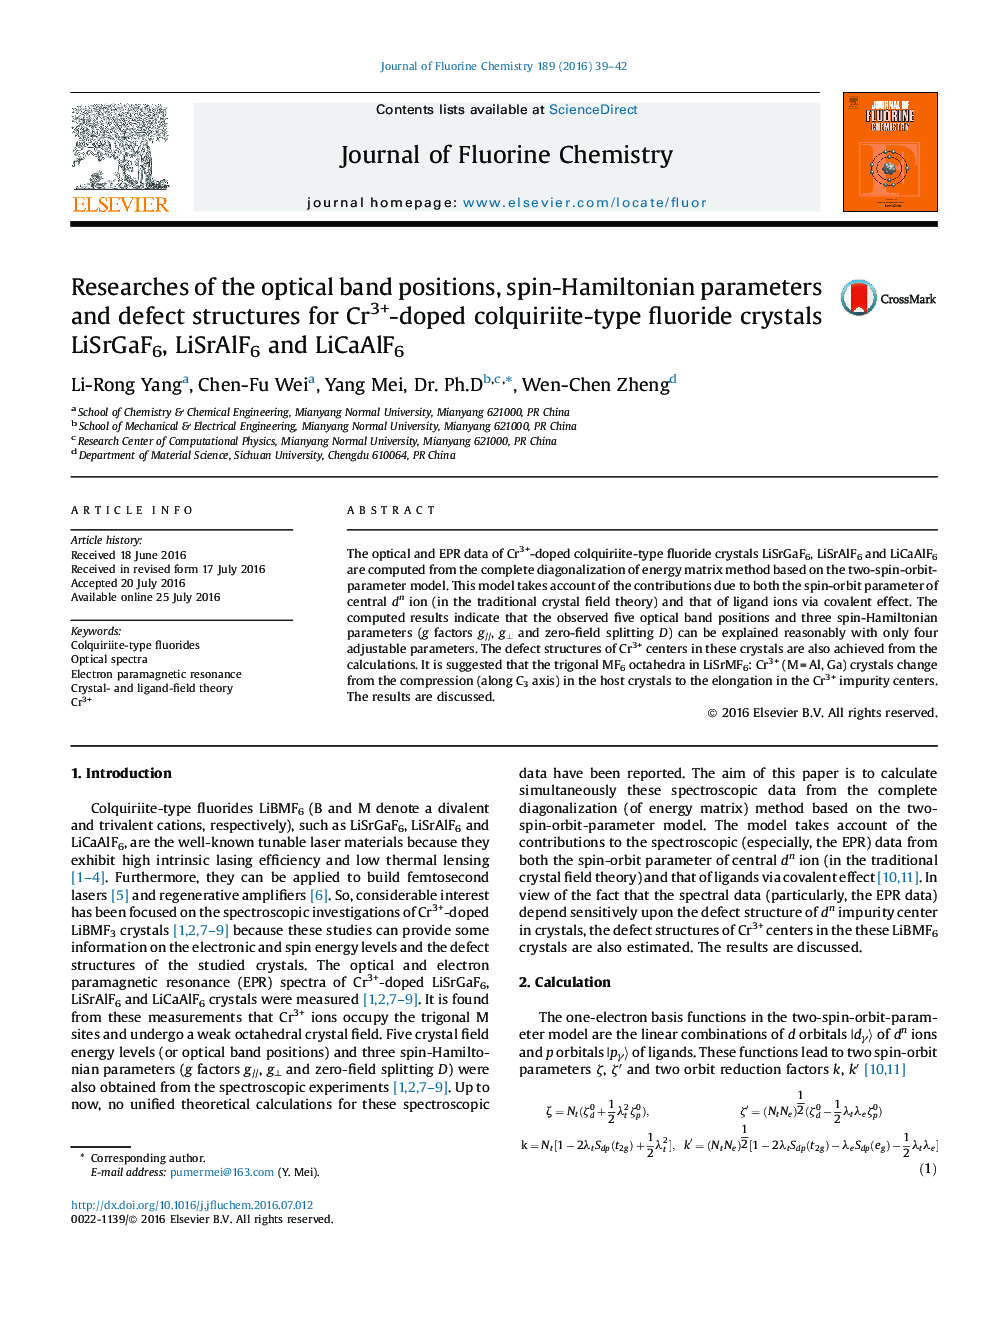 تحقیق و پژوهش موقعیت های نوری باند، پارامترهای اسپین هامیلتونی و ساختارهای نقص برای LiCaAlF6 و LiSrAlF6 و LiSrGaF6 کریستال های فلوراید نوع colquiriite جفت شده با Cr3